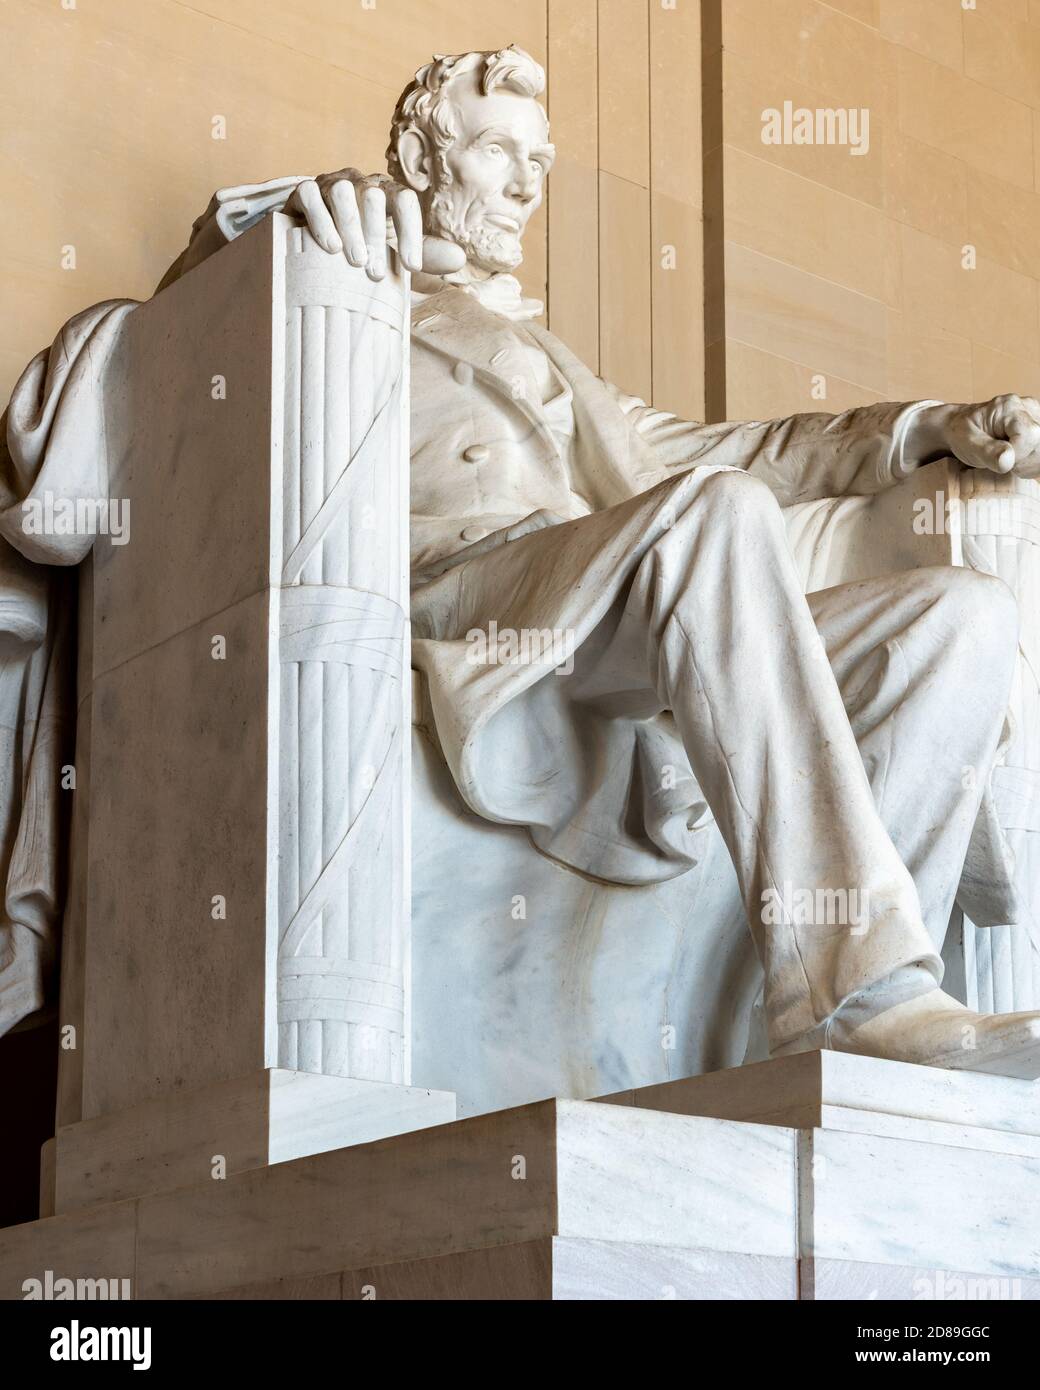 David Chester la colossale scultura Lincoln seduta in francese nel Lincoln Memorial. Scolpita dai Fratelli Piccirilli, la statua pesa 170 tonnellate. Foto Stock